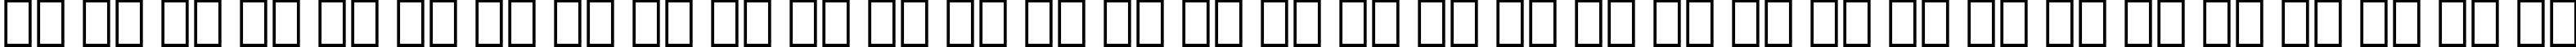 Пример написания русского алфавита шрифтом De Vinne Italic Text BT